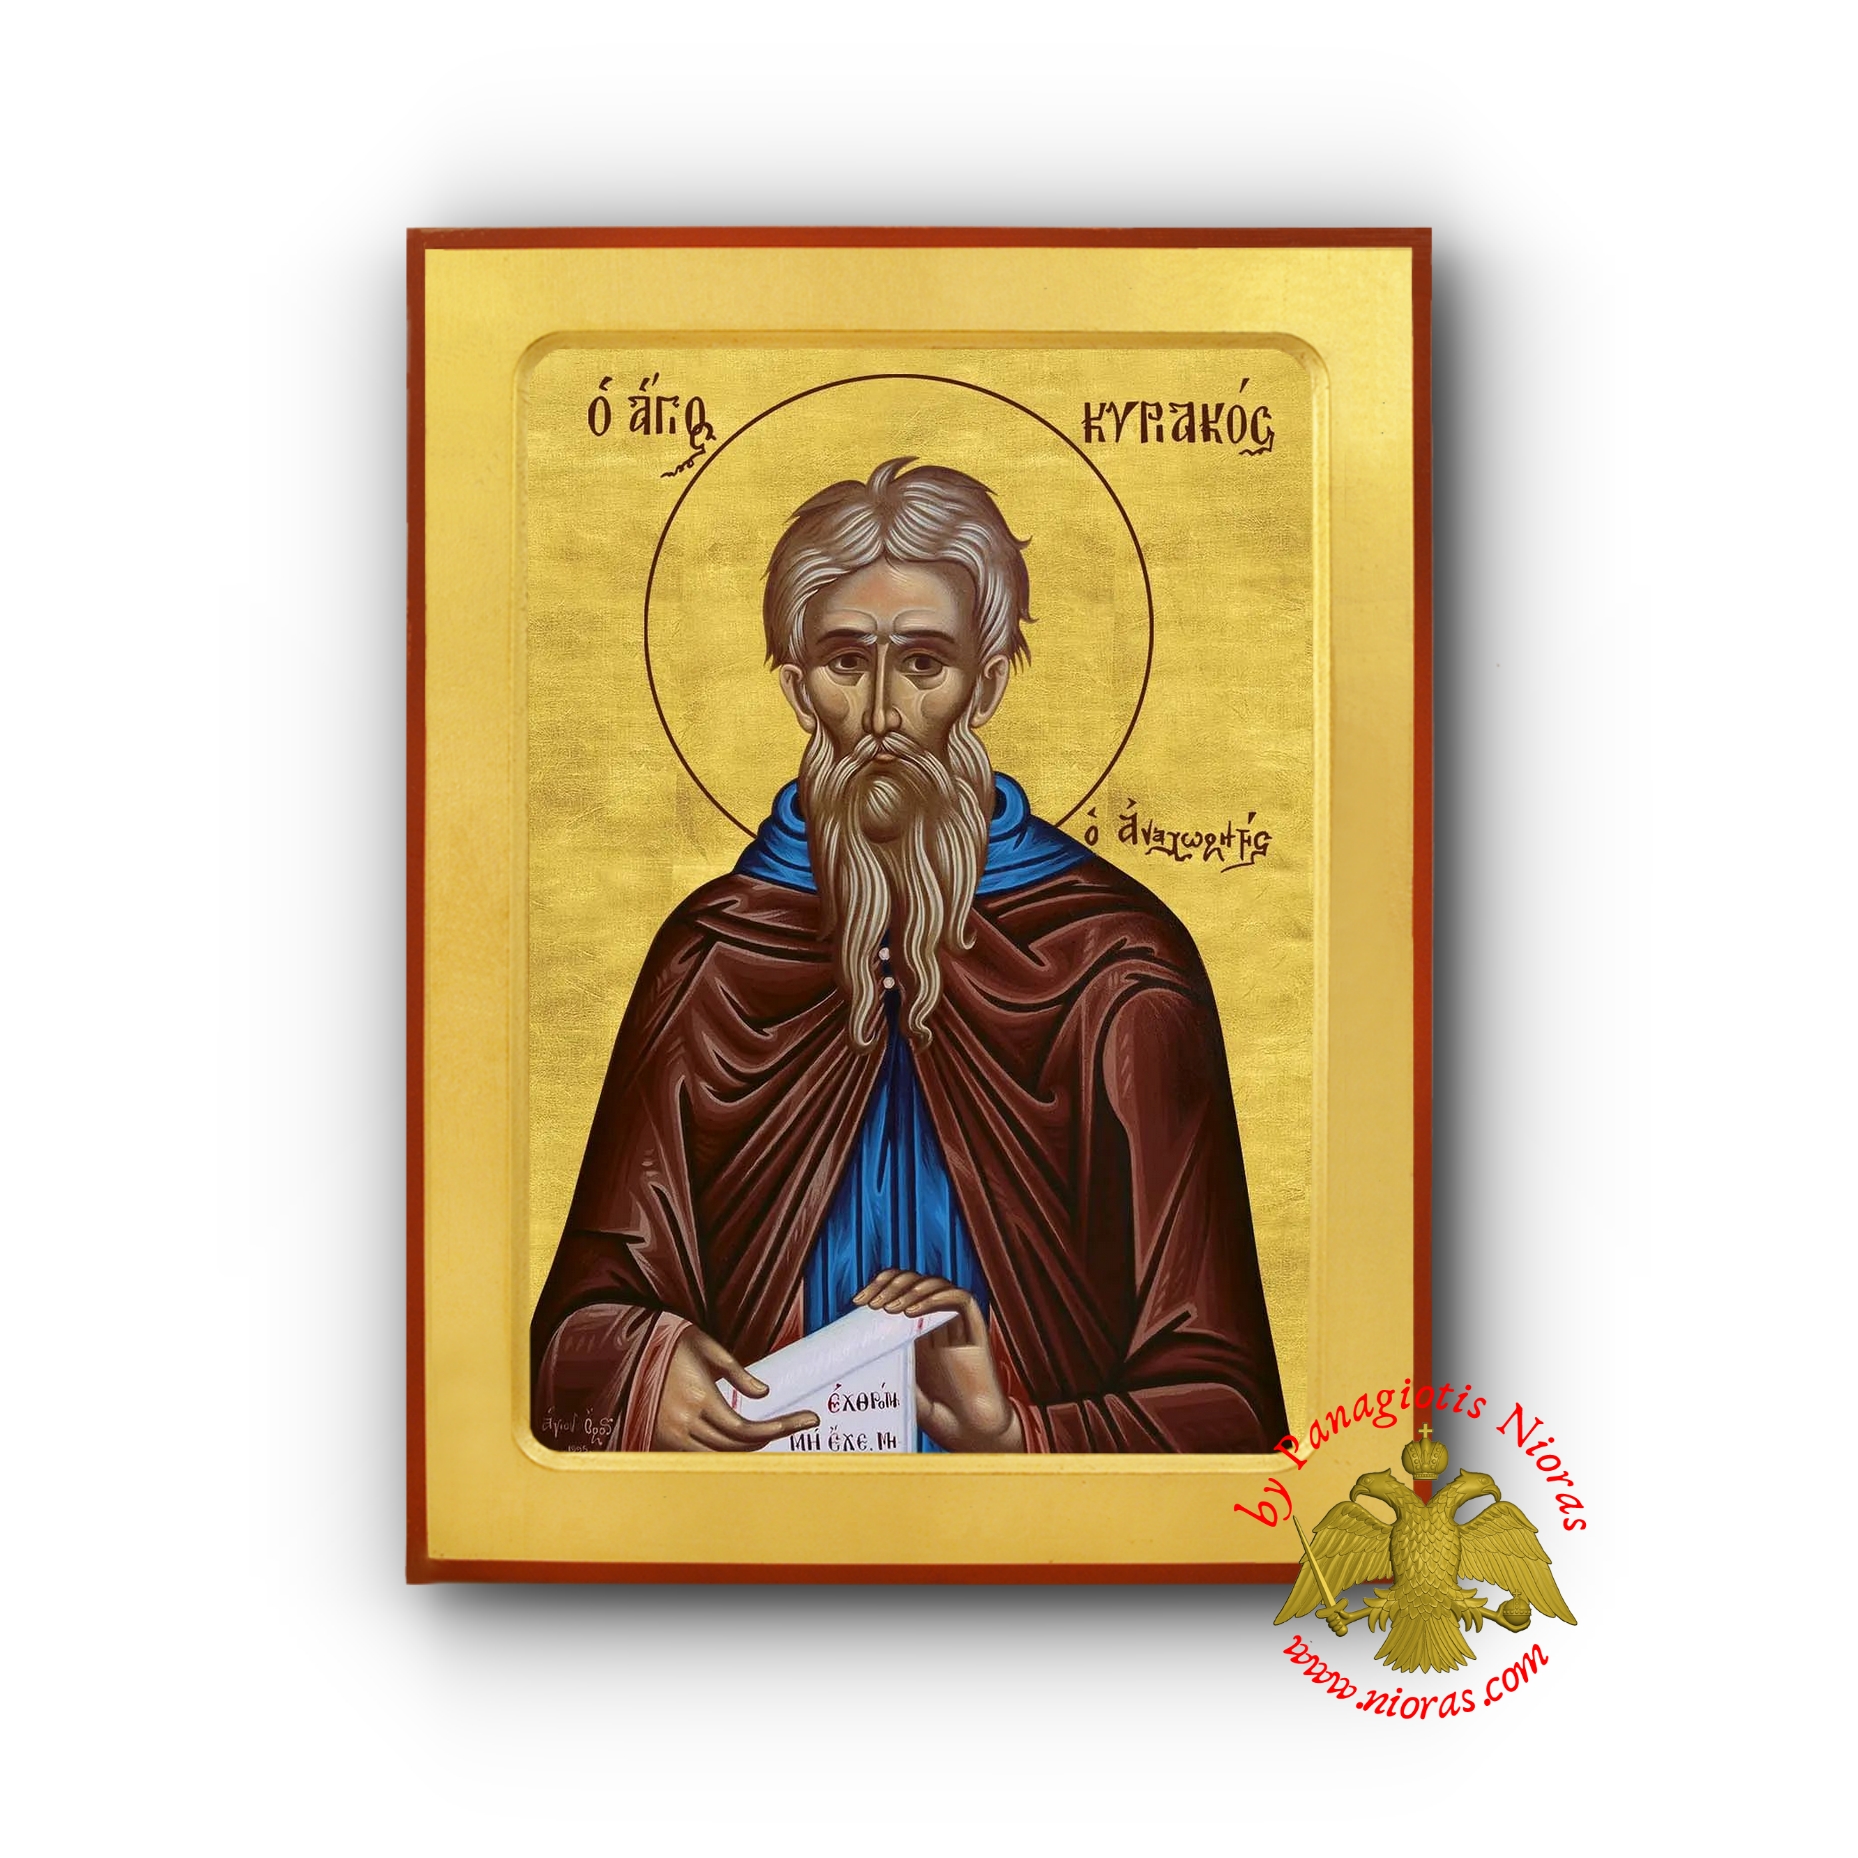 Άγιος Κυριάκος ο Αναχωριτης Ξύλινη Βυζαντινή Εικόνα